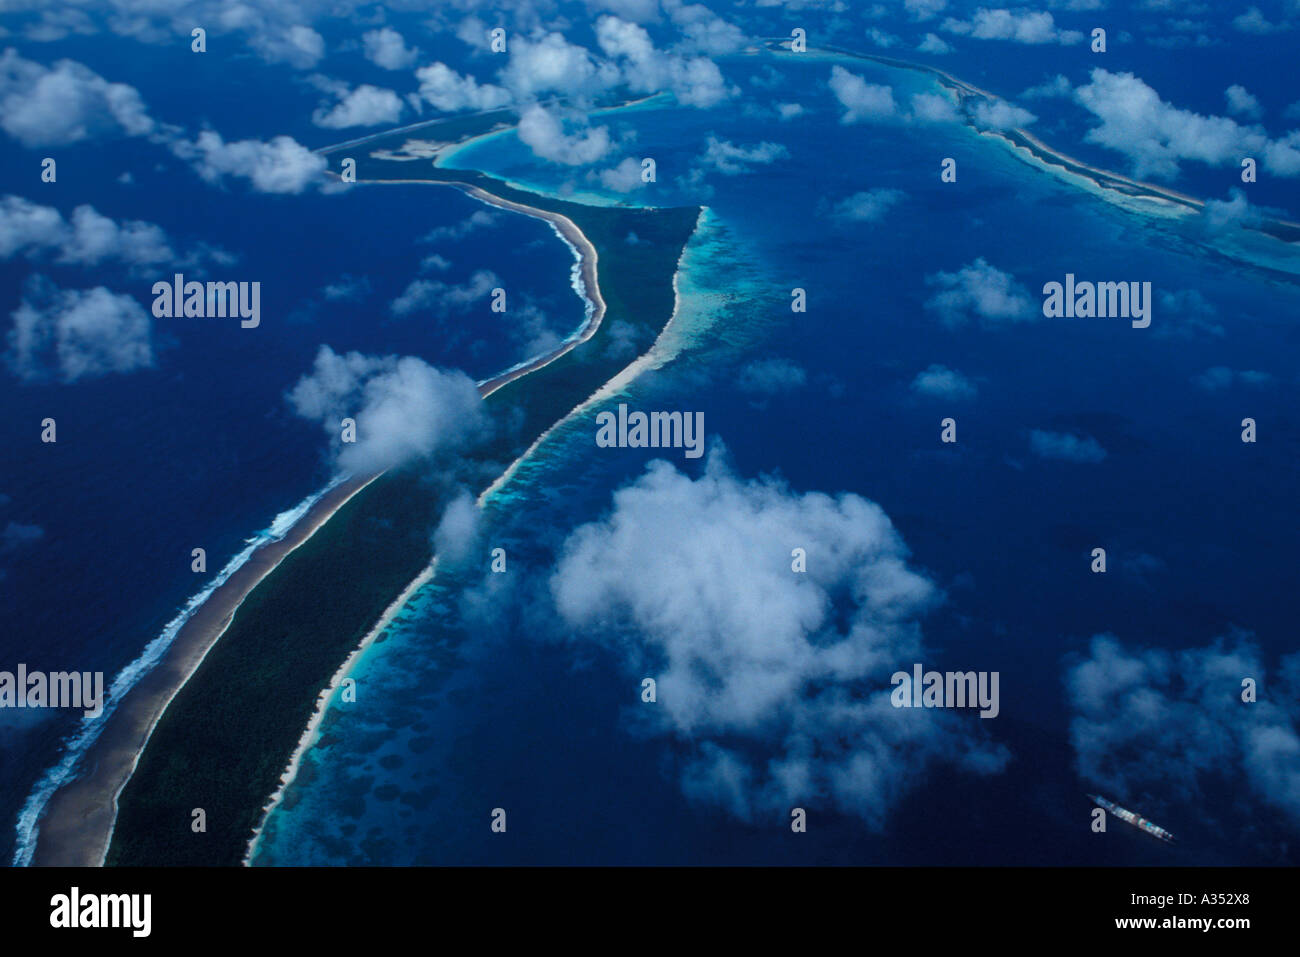 Выход в индийский океан. Диего Гарсия остров. Архипелаг Чагос. Флаг архипелаг Чагос. Архипелаг Чагос координаты Атолл Диего Гарсия.